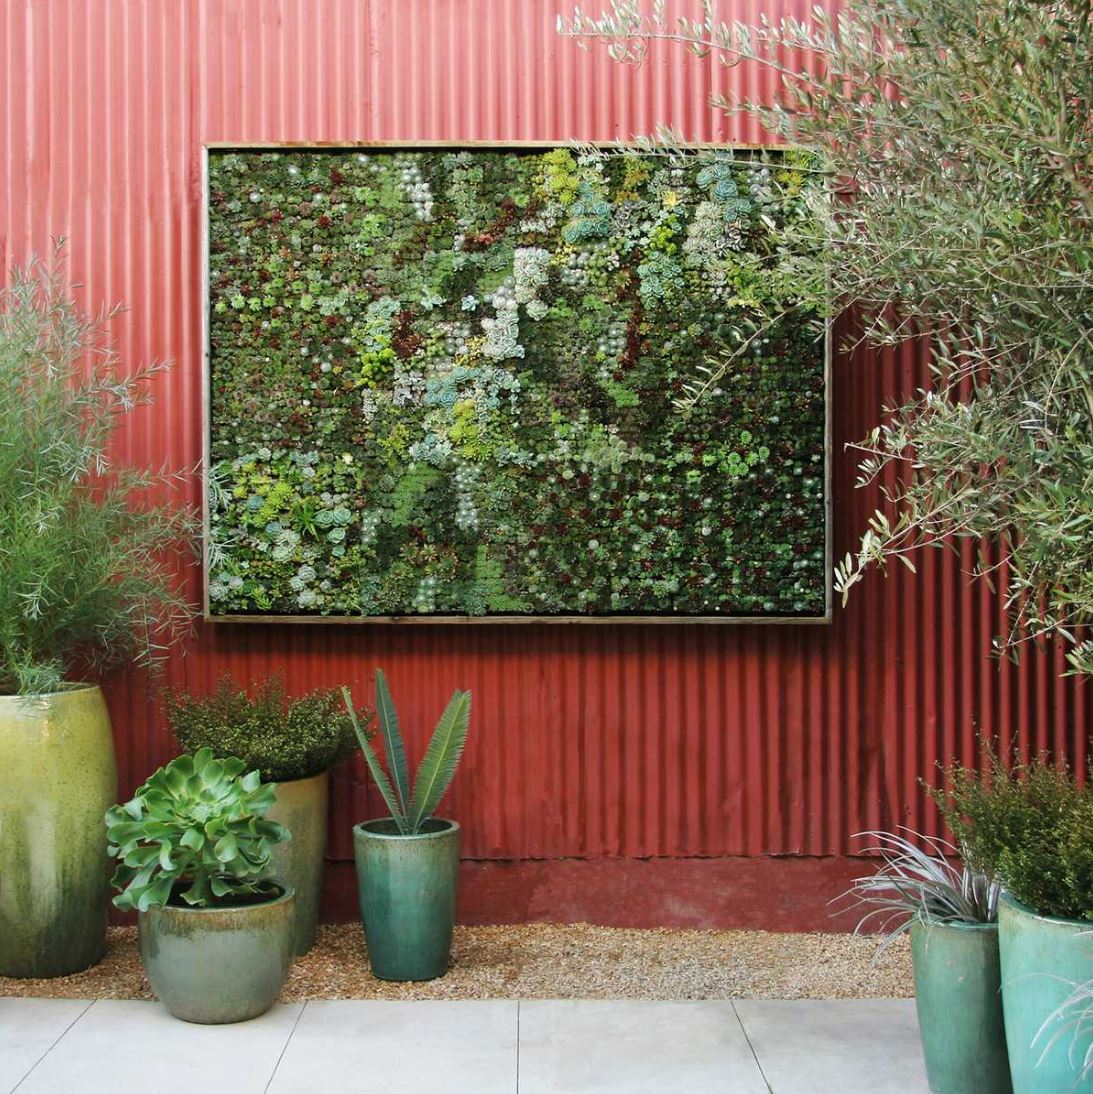 Think Green: 20 Vertical Garden Ideas